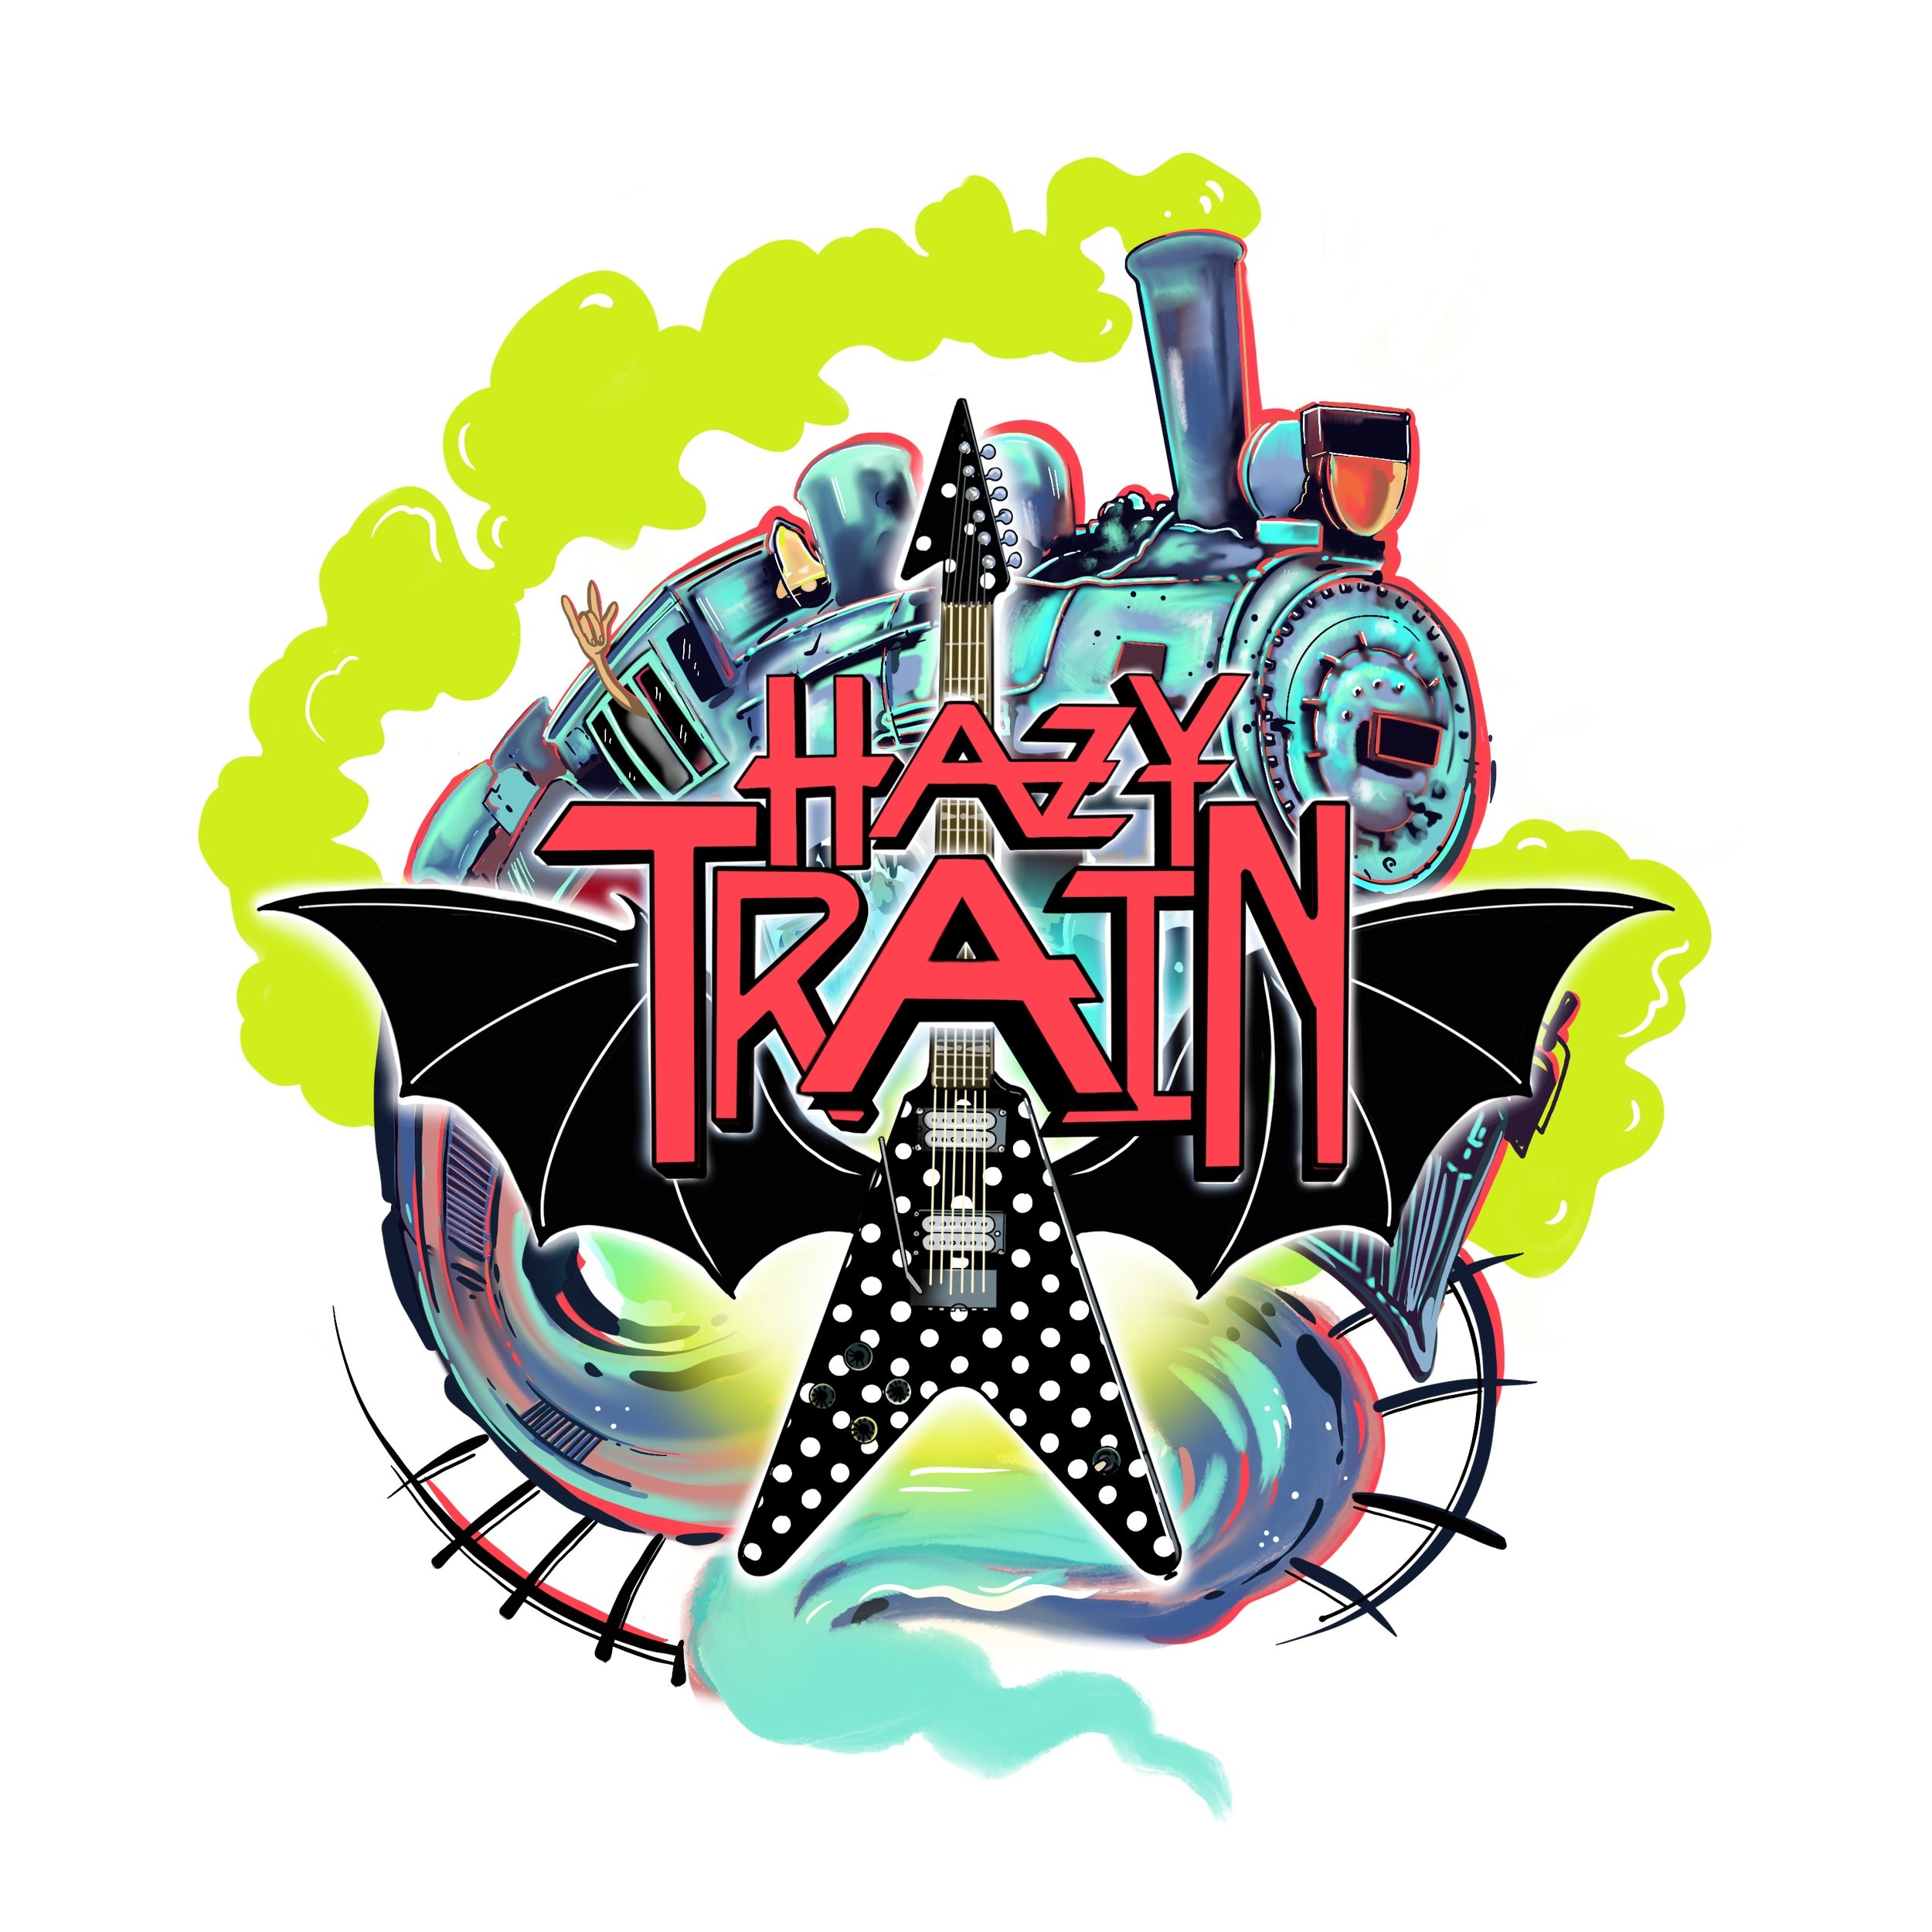 Hazy Train